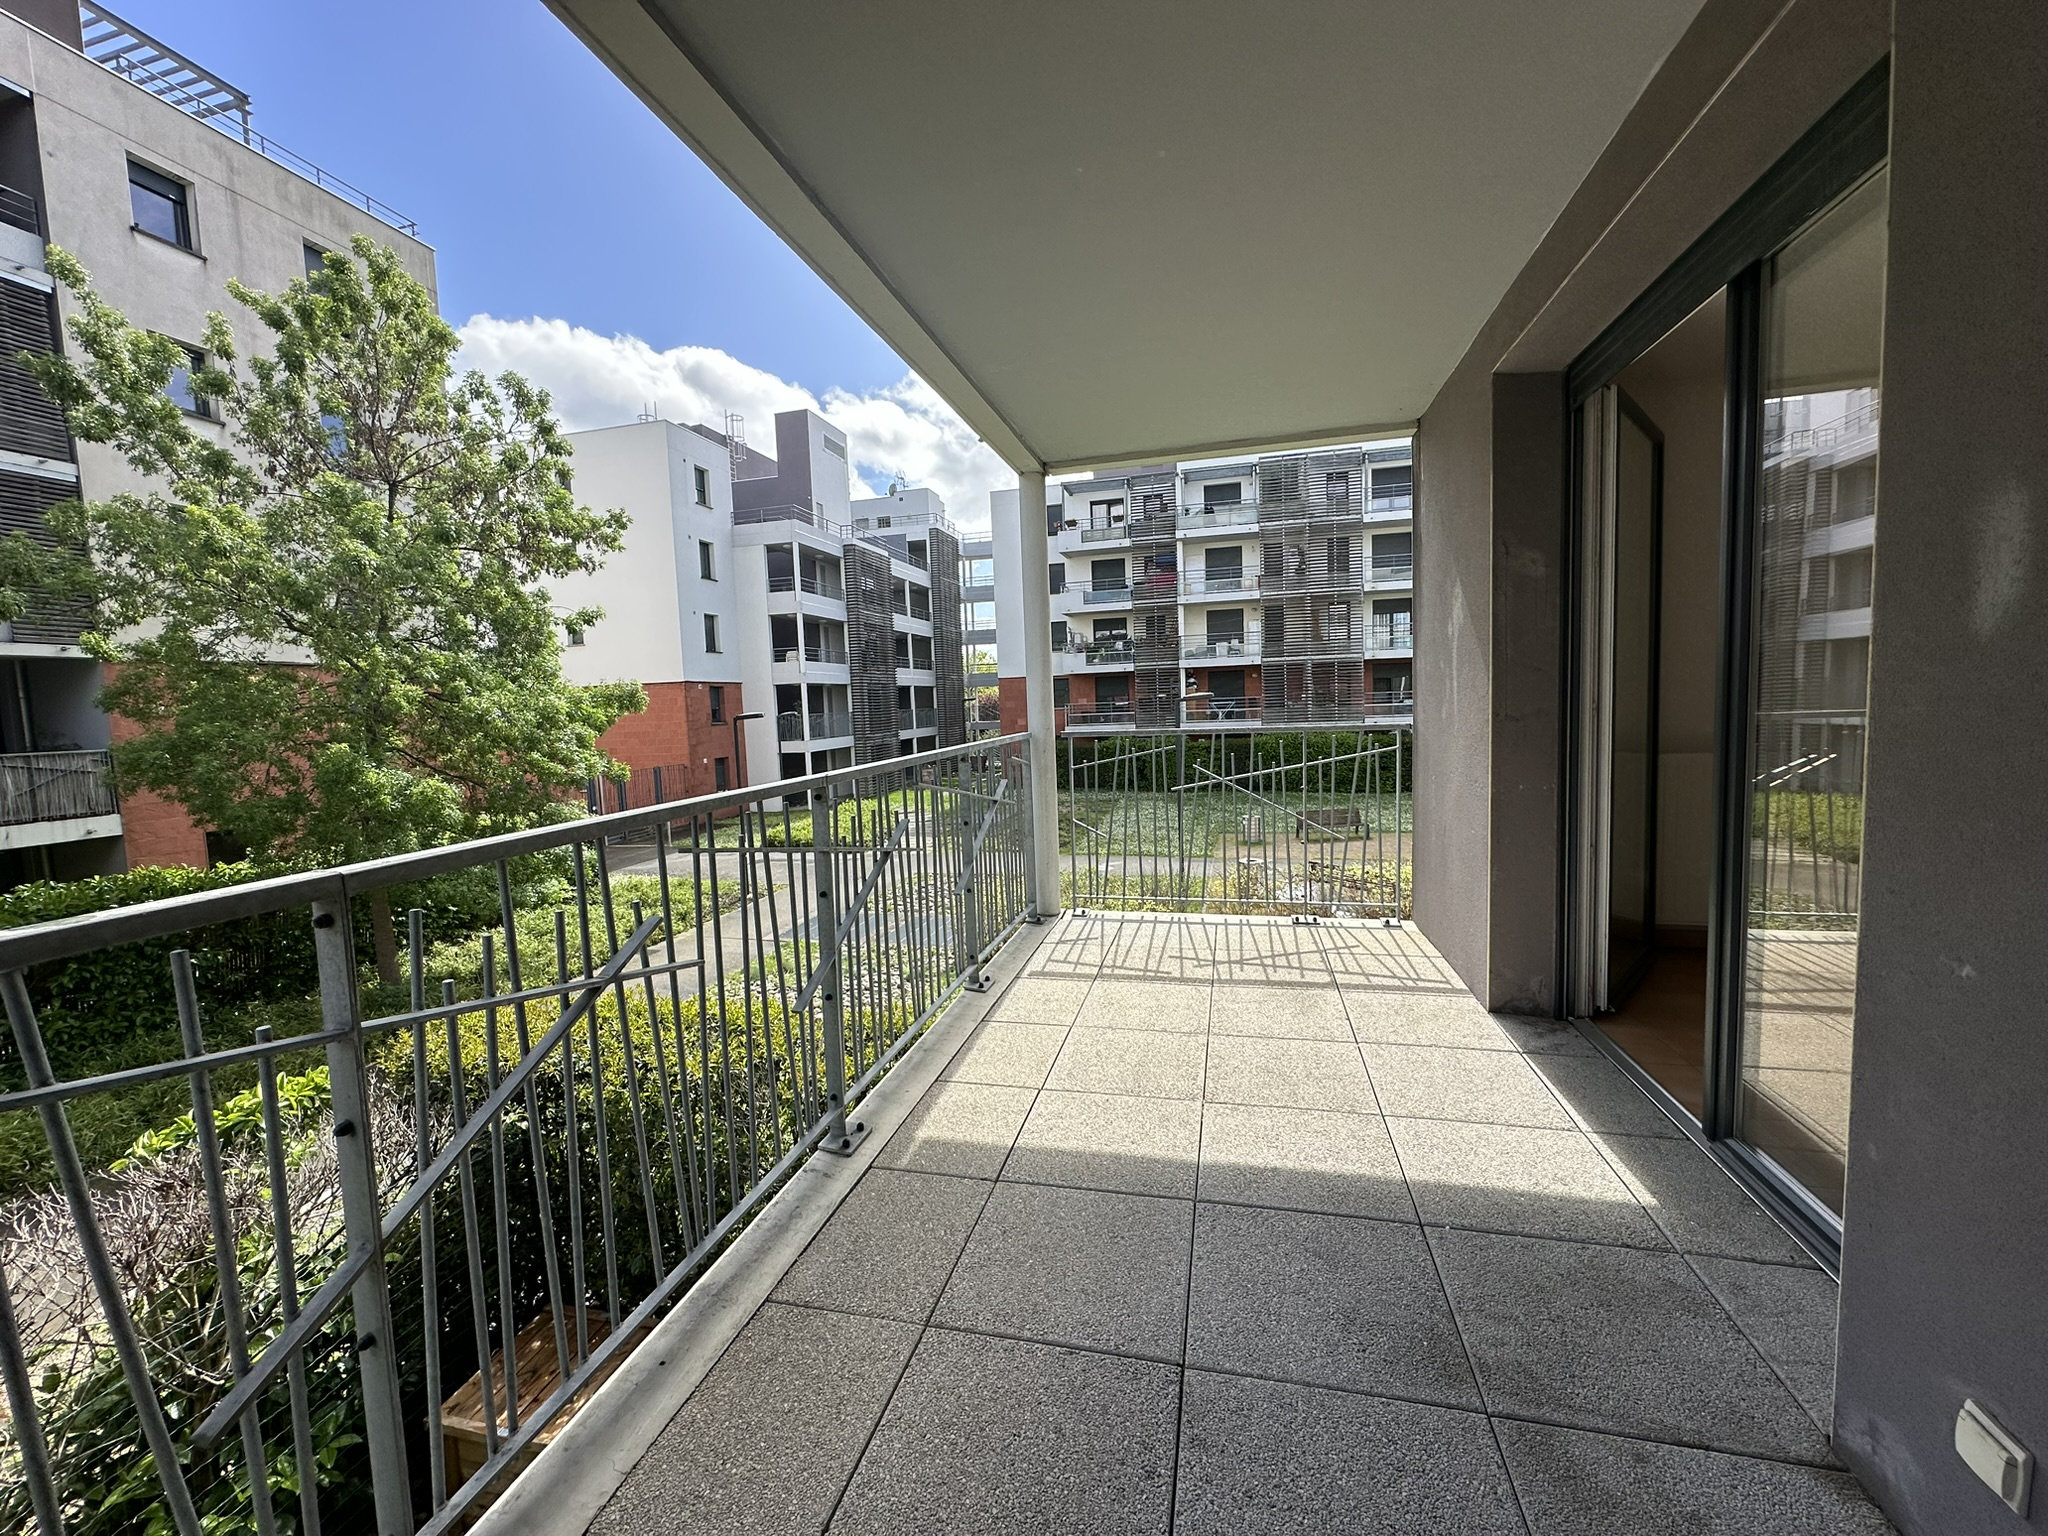 En exclusivité - A vendre - Appartement T3 en étage de 5960 m2 - Spacieux balcon et vue sur jardin plein Sud (3 pièces, 60 m²)